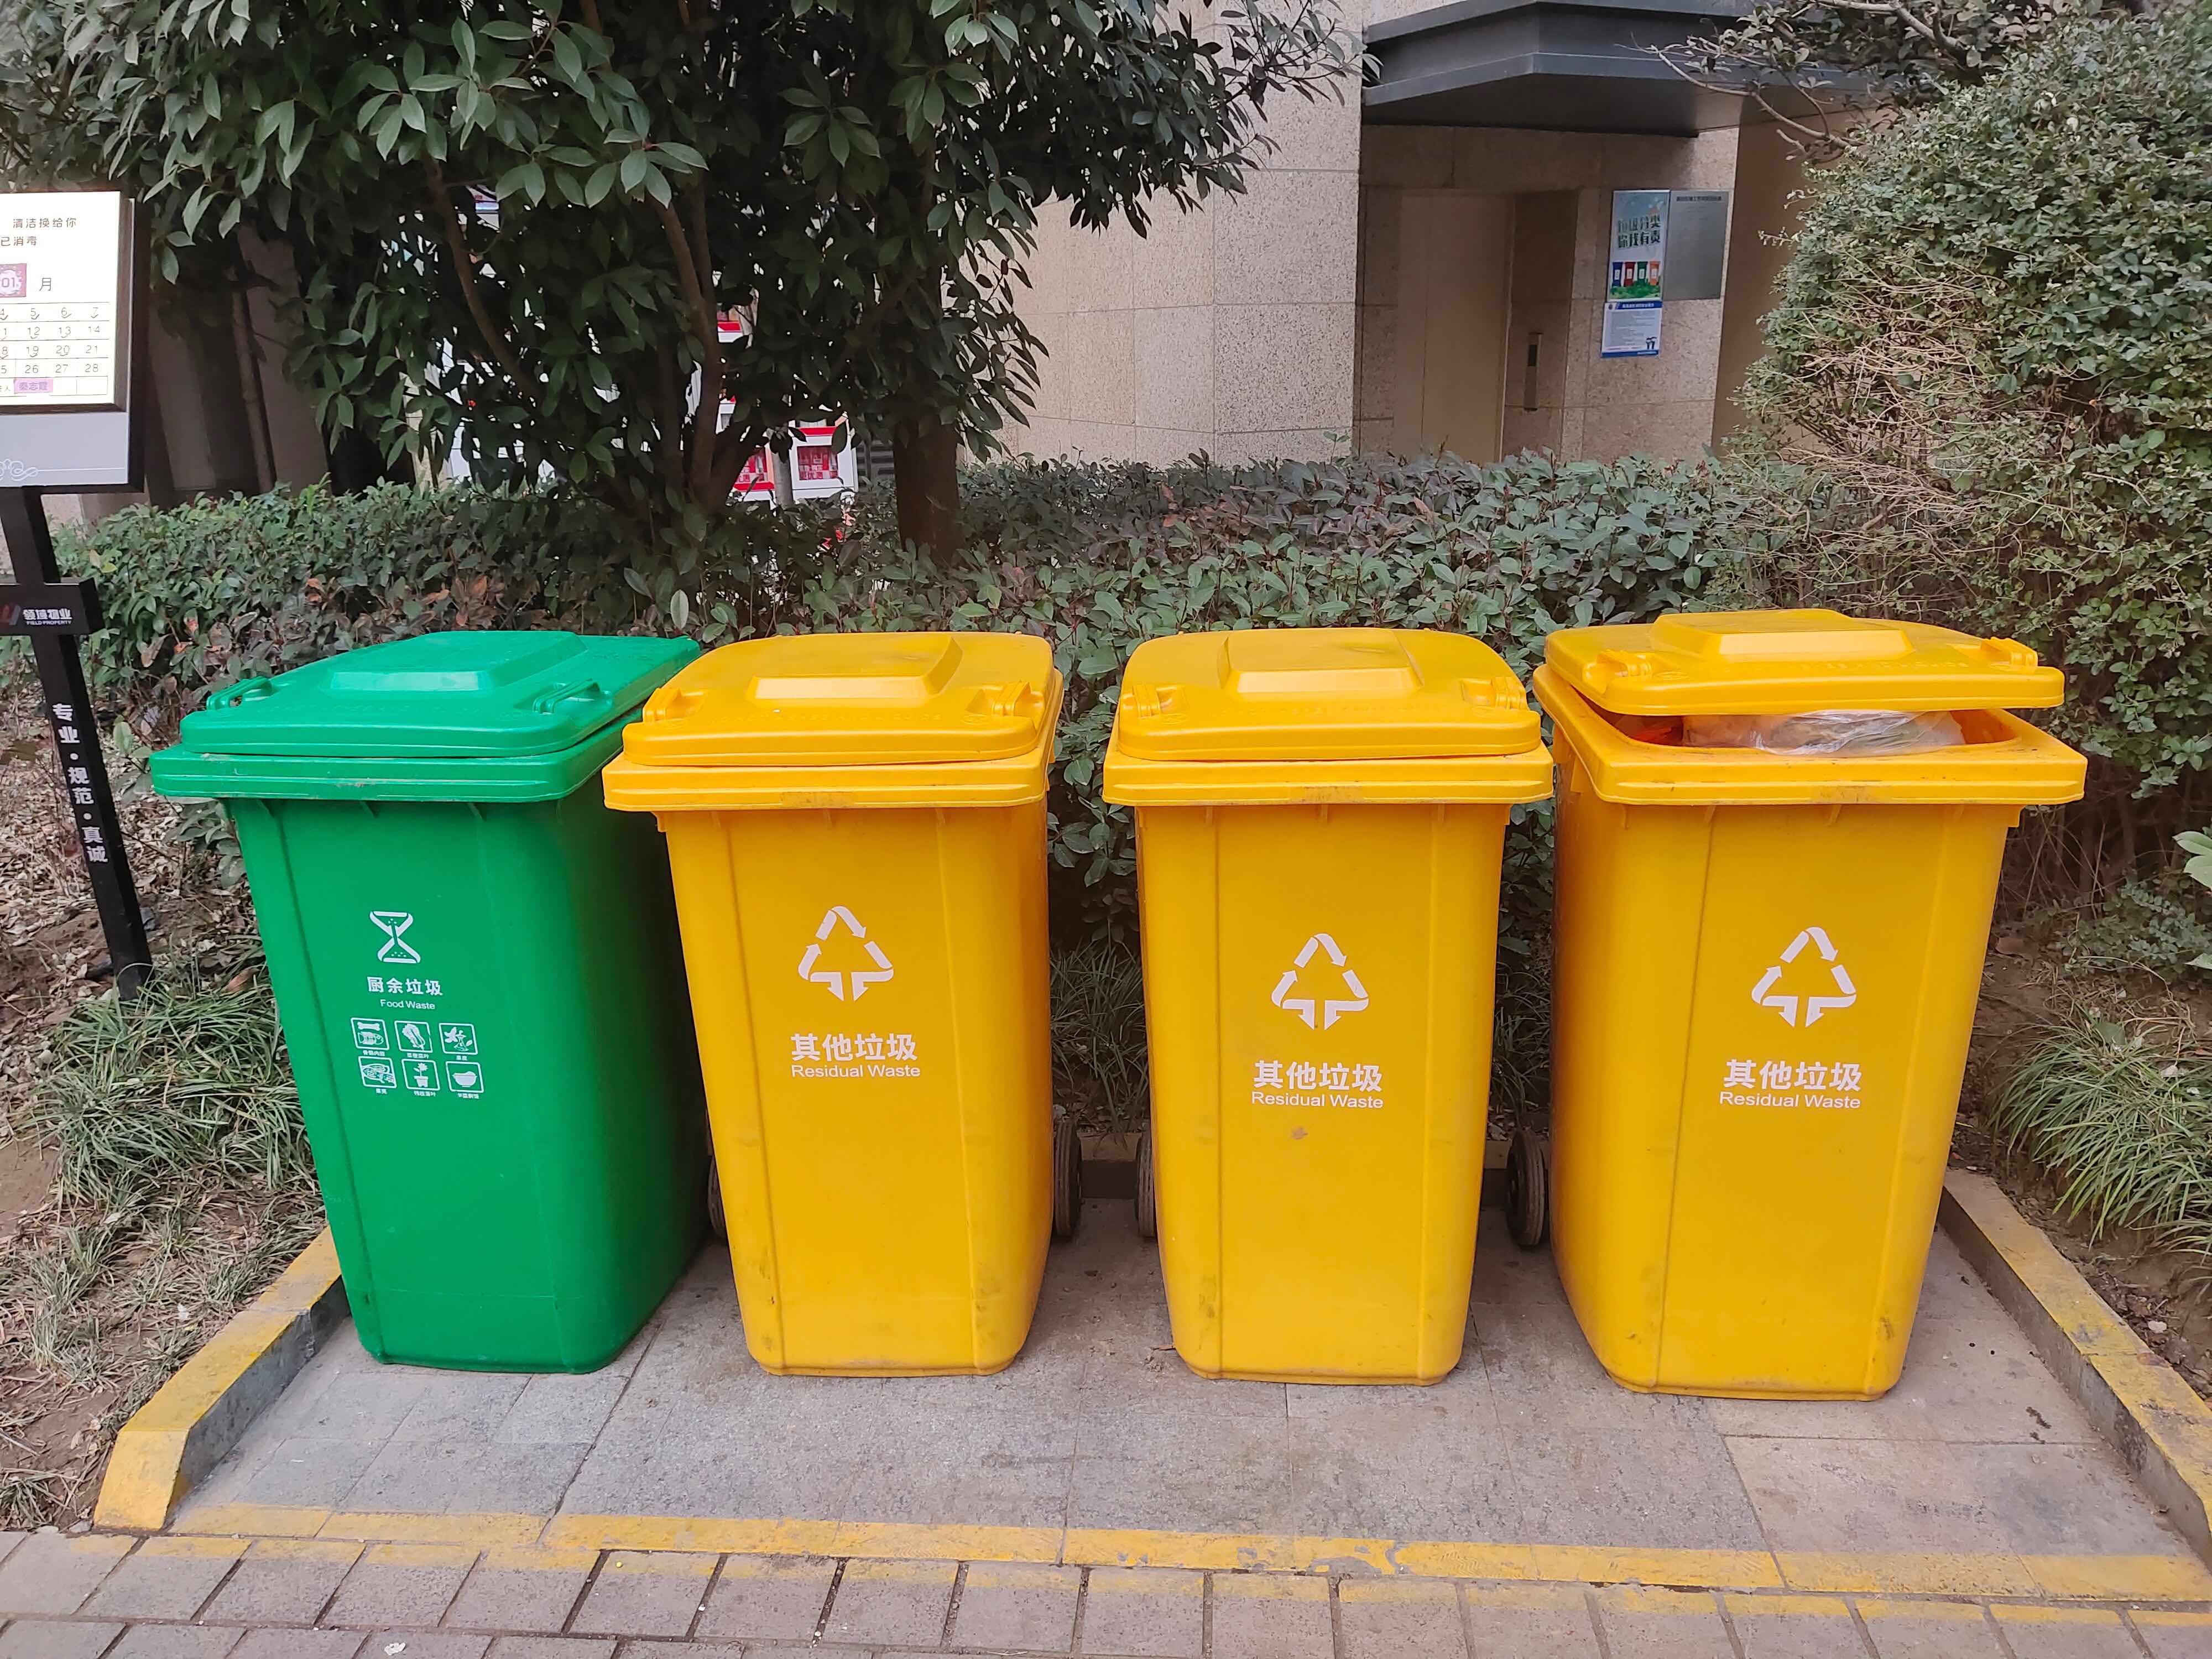 垃圾分类几种颜色的桶__垃圾分类垃圾桶颜色分为